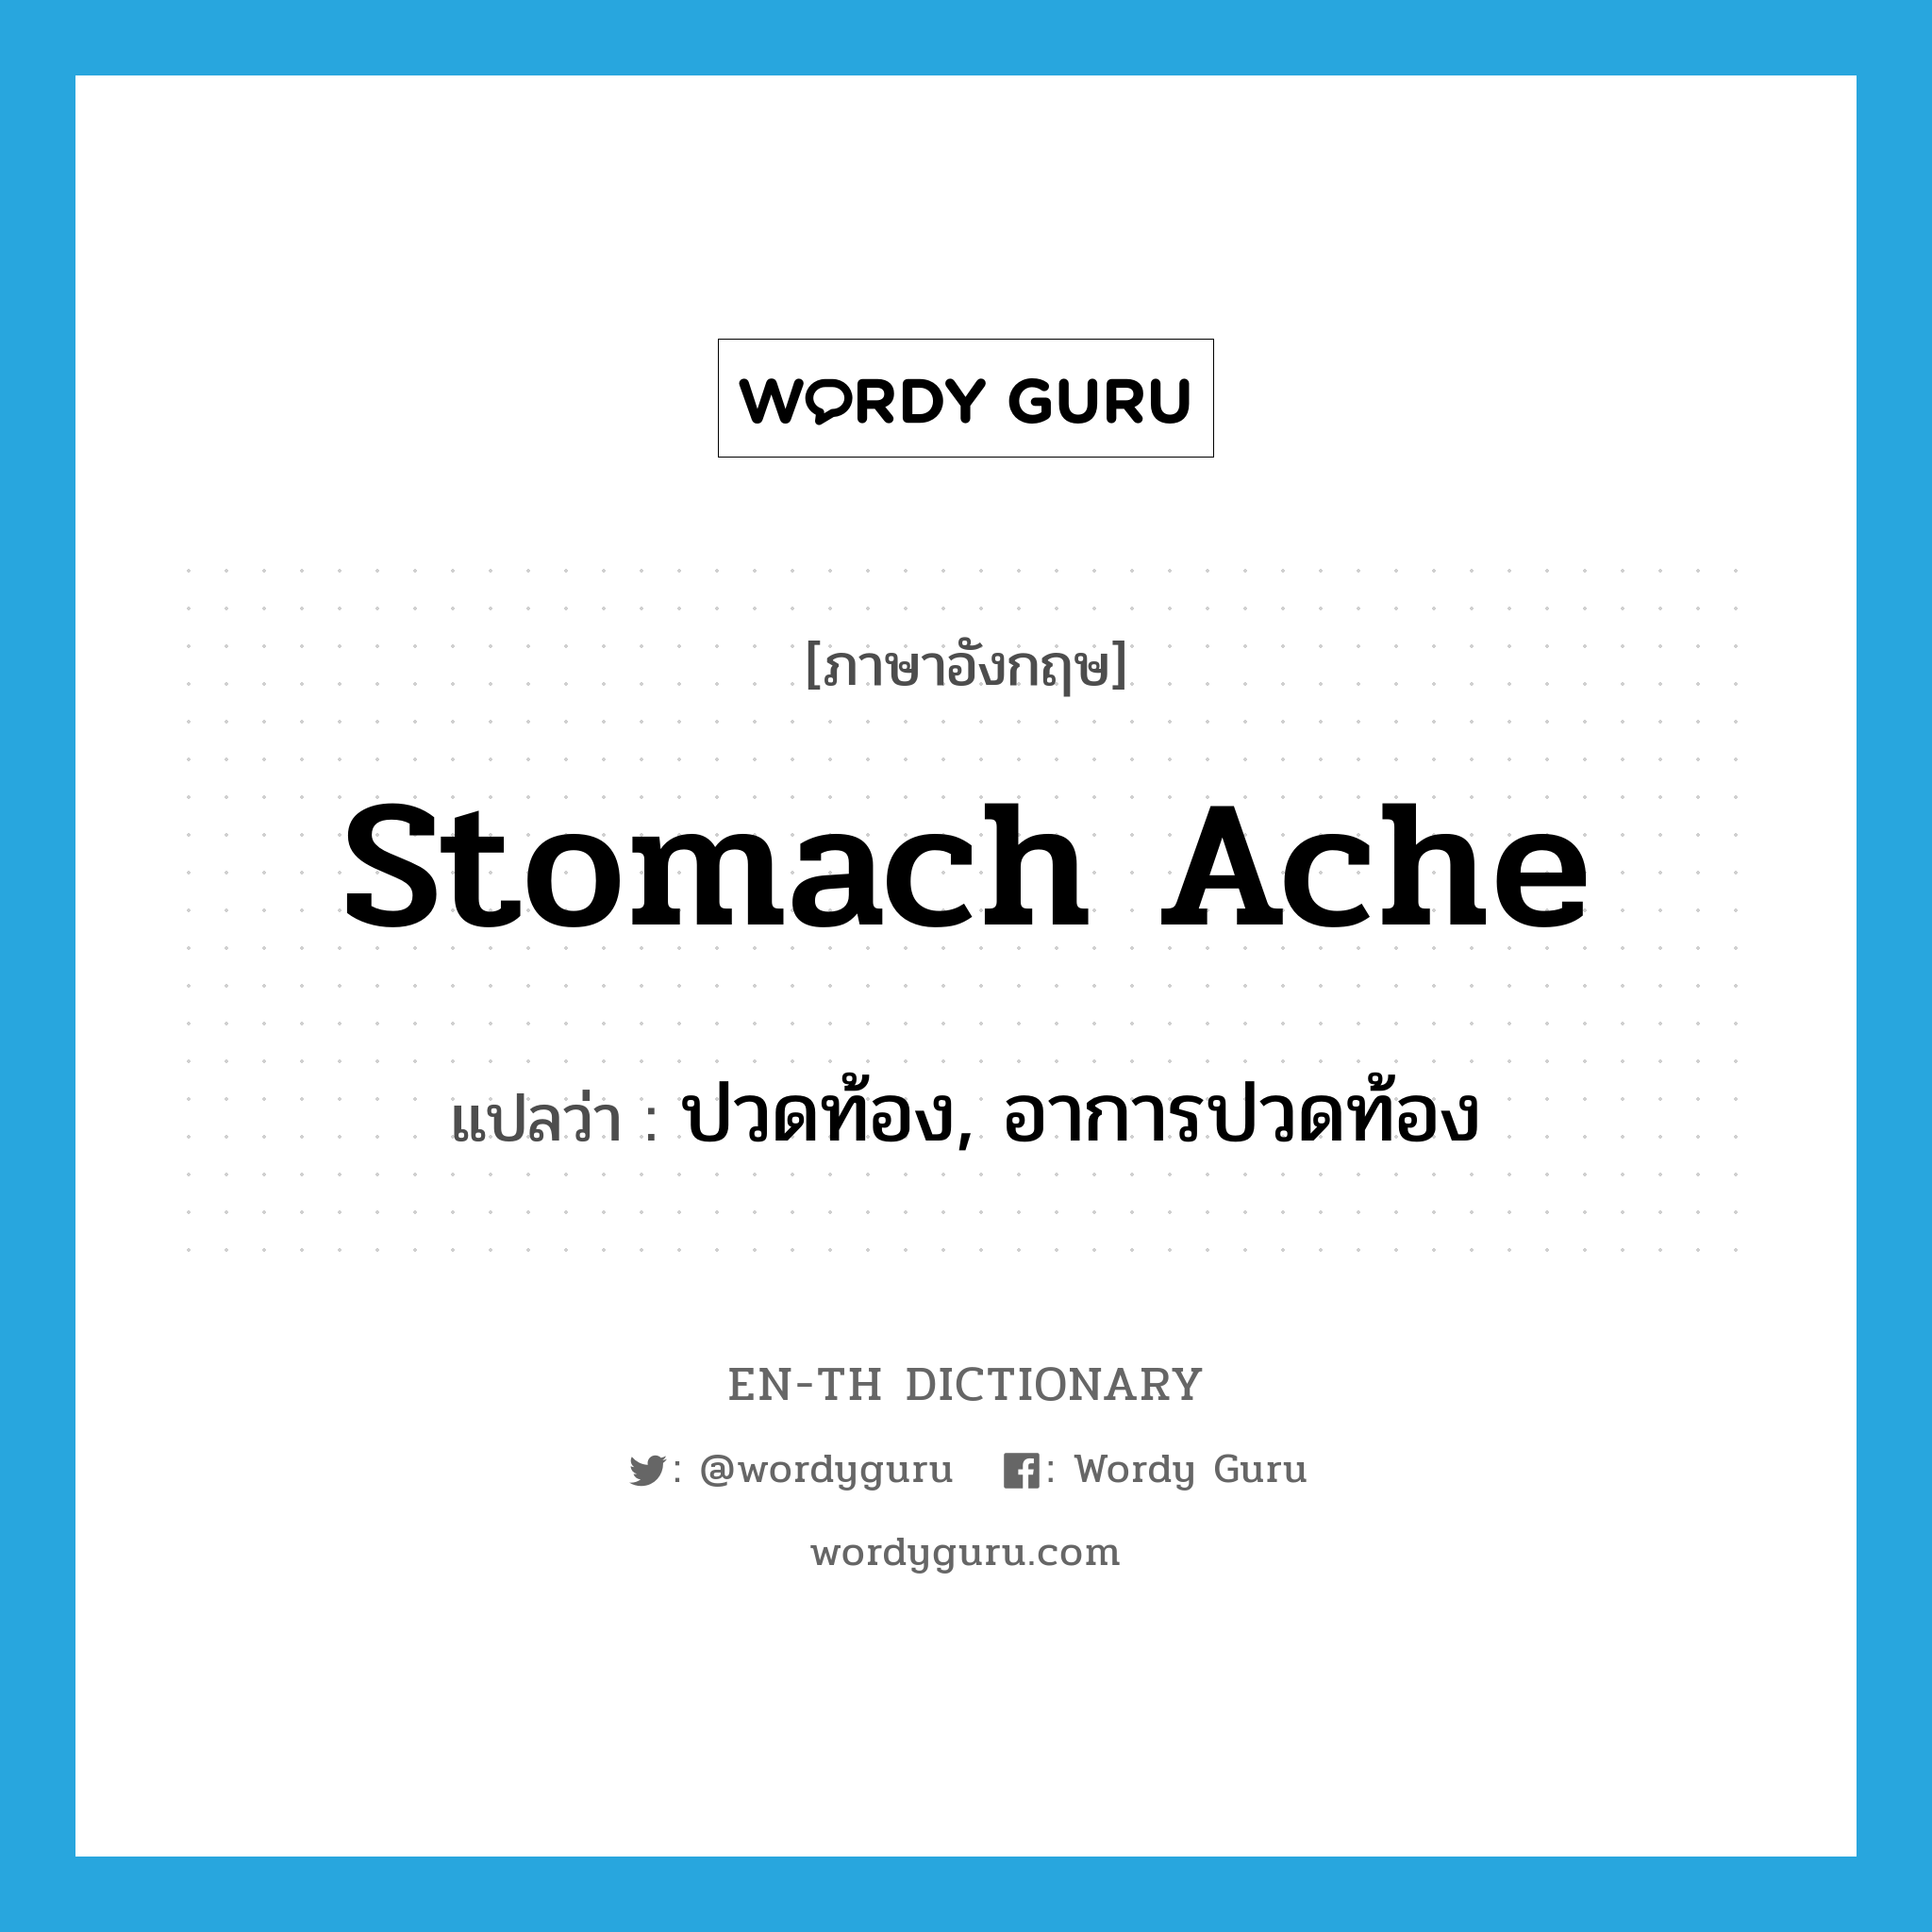 ปวดท้อง, อาการปวดท้อง ภาษาอังกฤษ?, คำศัพท์ภาษาอังกฤษ ปวดท้อง, อาการปวดท้อง แปลว่า stomach ache ประเภท N หมวด N